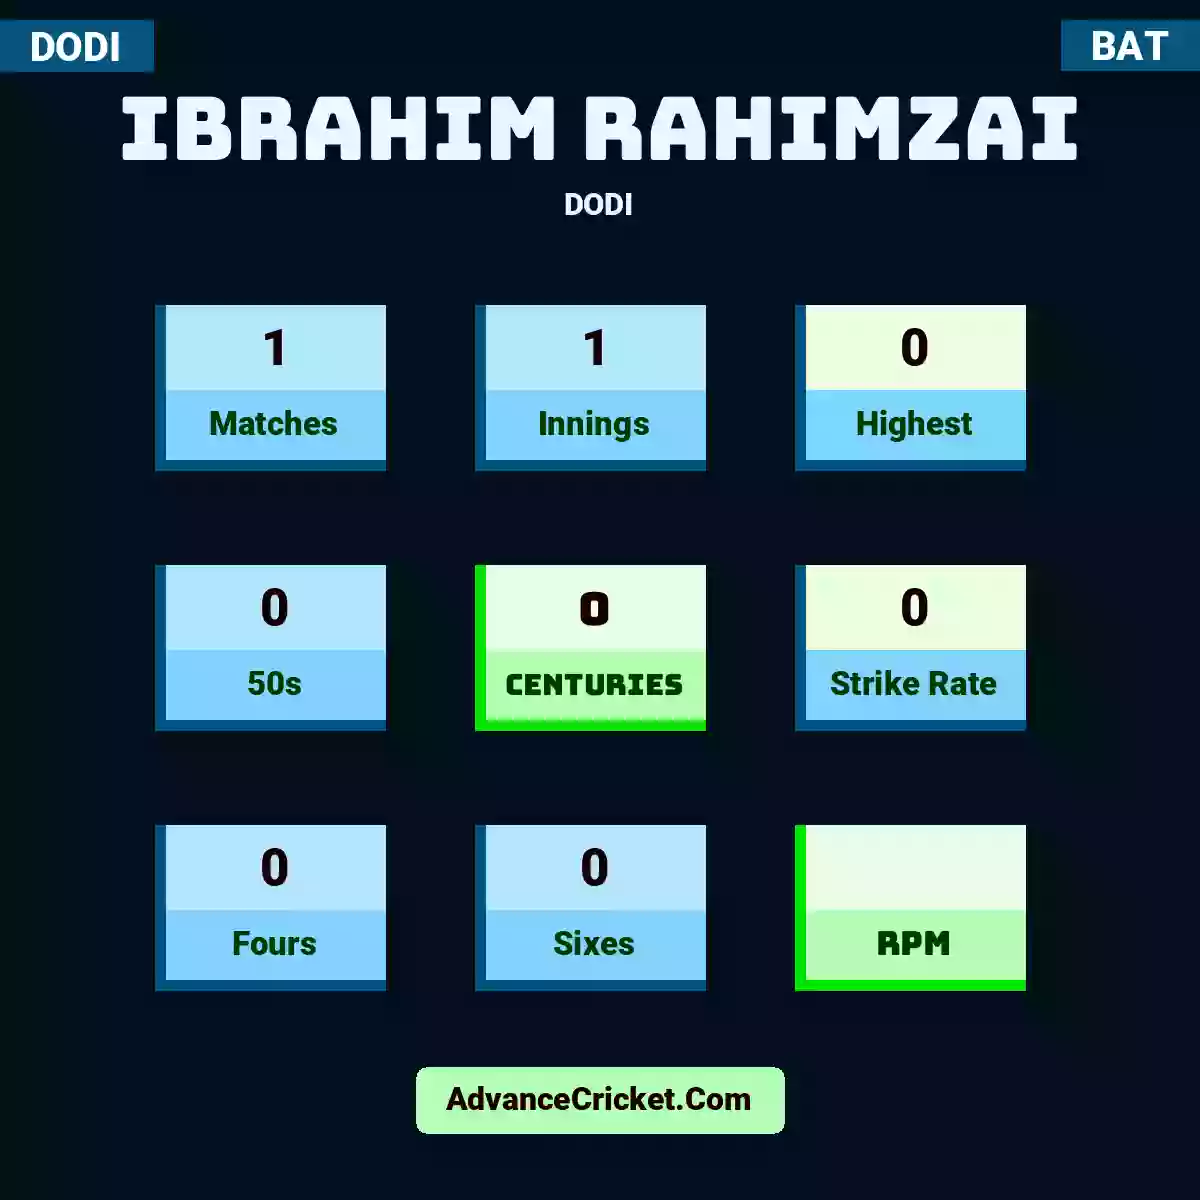 Ibrahim Rahimzai DODI , Ibrahim Rahimzai played 1 matches, scored 0 runs as highest, 0 half-centuries, and 0 centuries, with a strike rate of 0. I.Rahimzai hit 0 fours and 0 sixes.